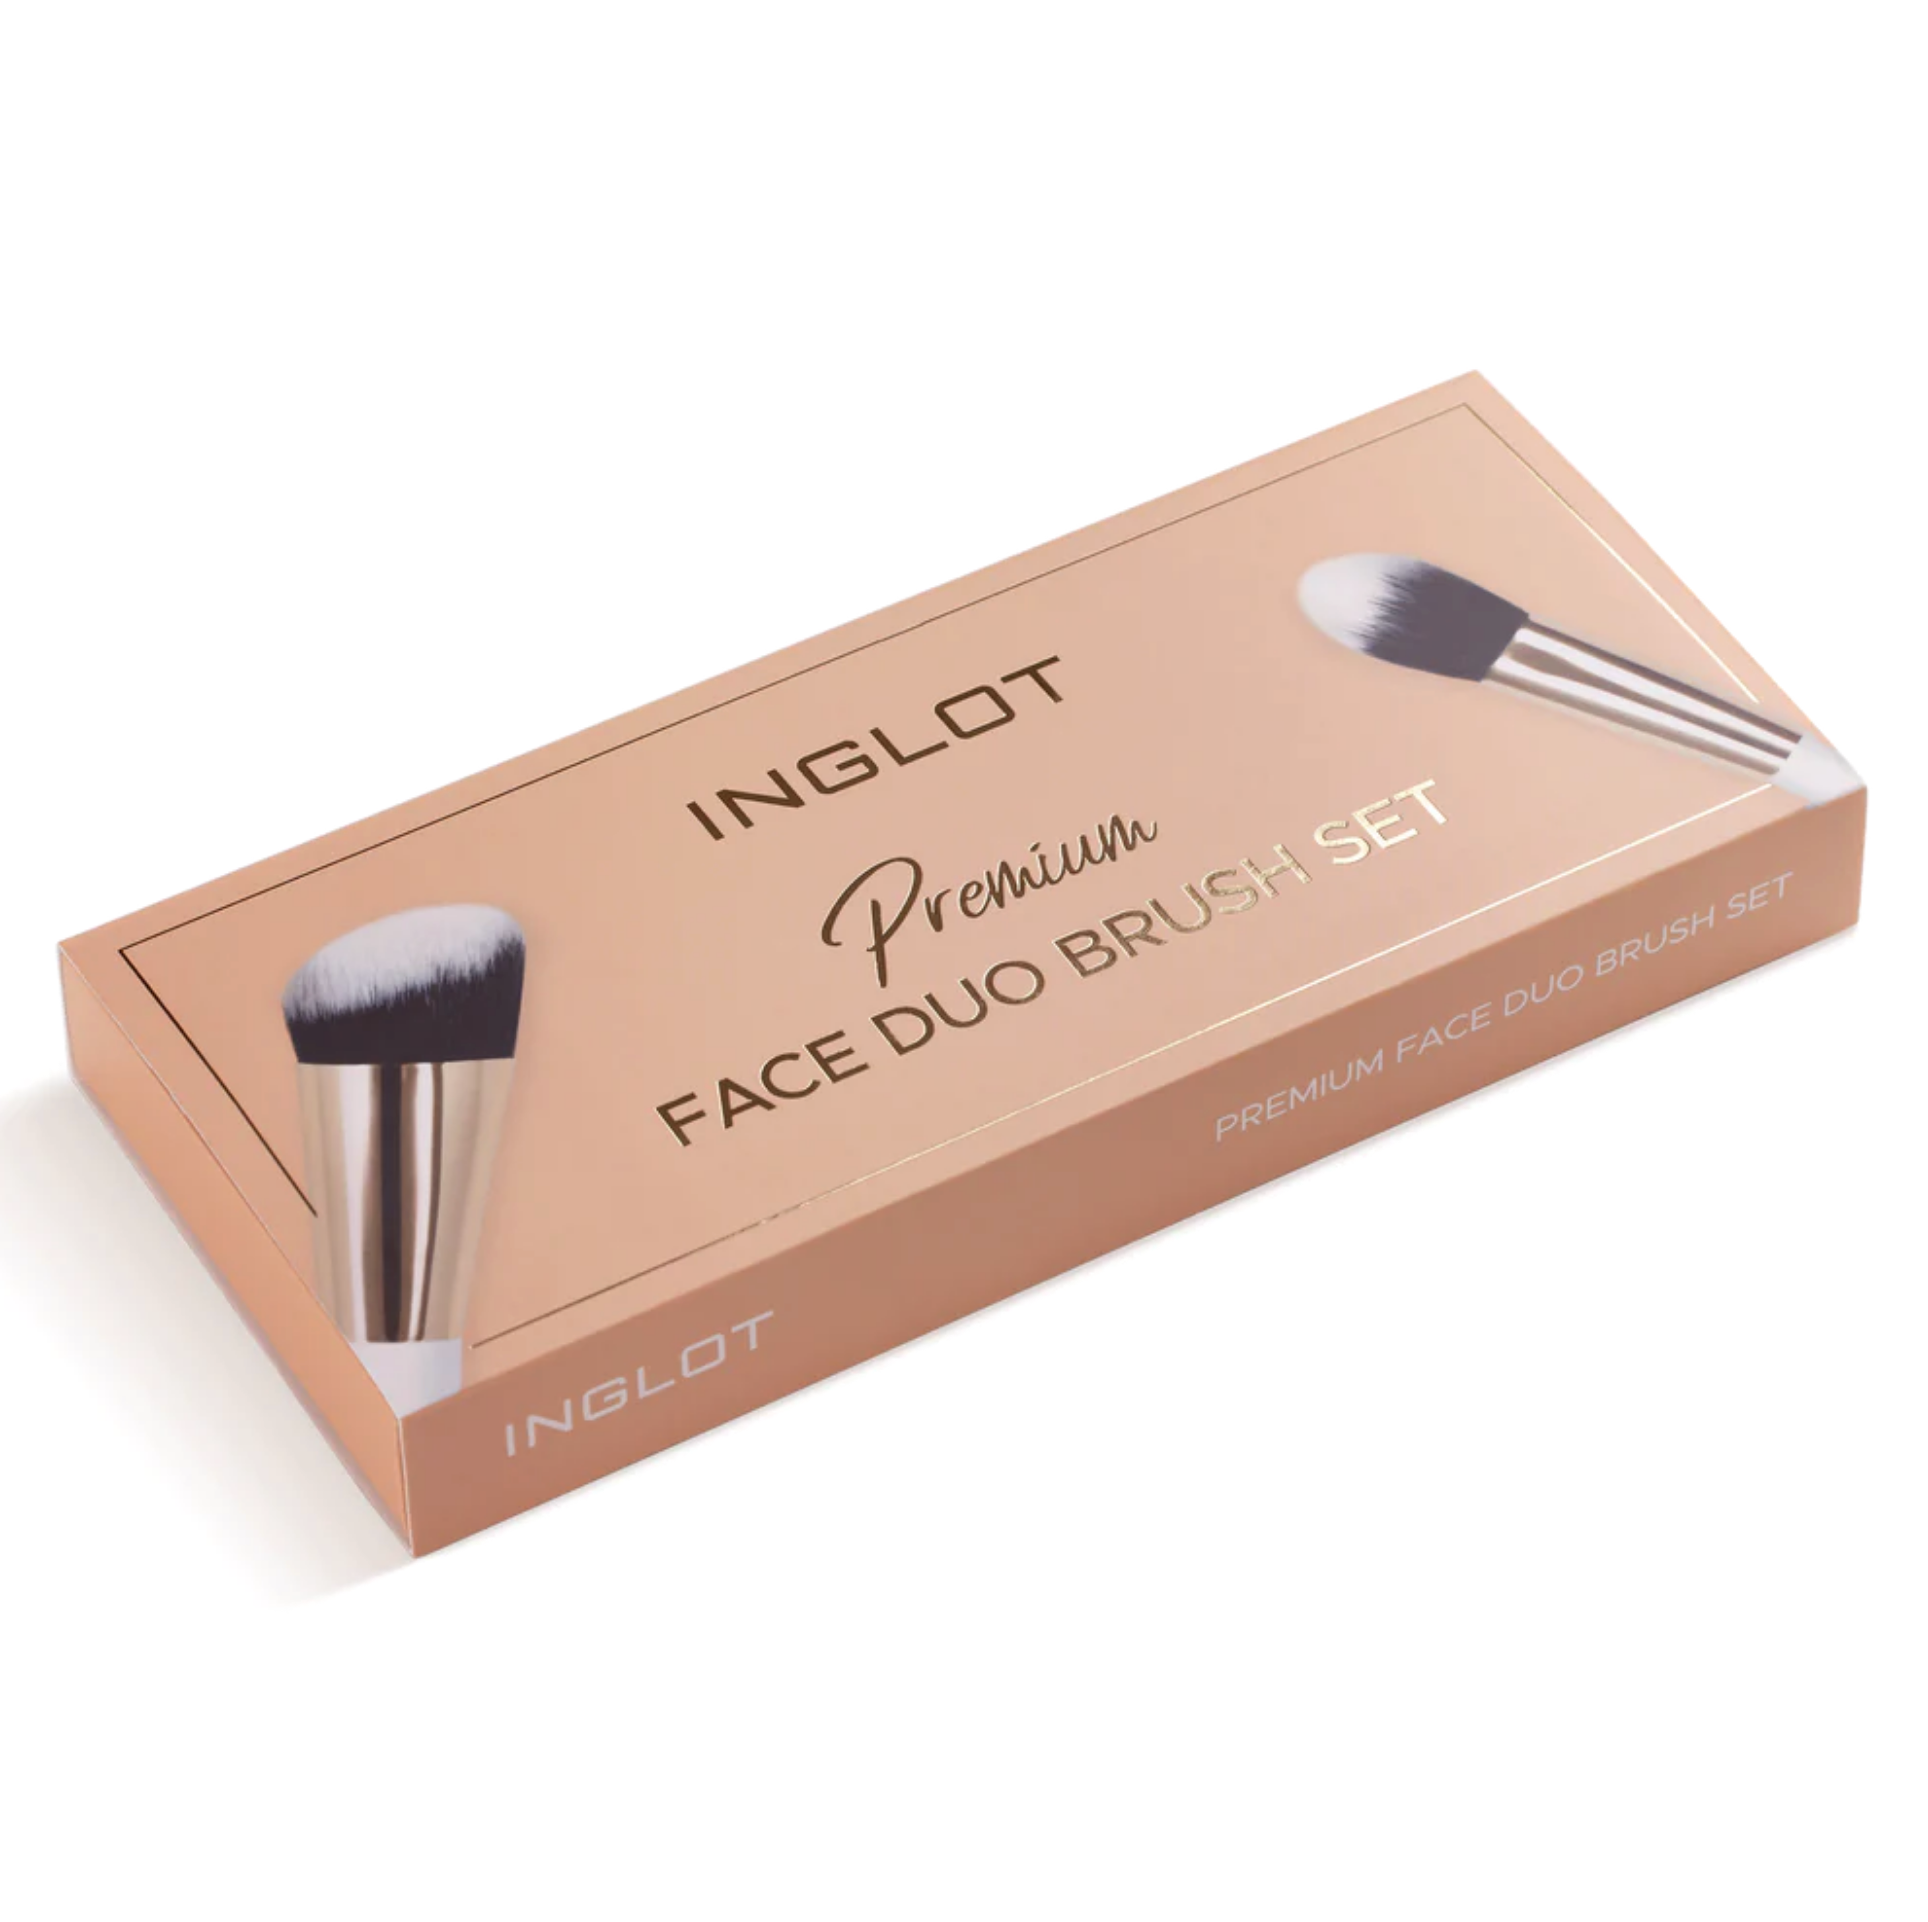 Inglot Premium Face Duo Brush Set, packaging